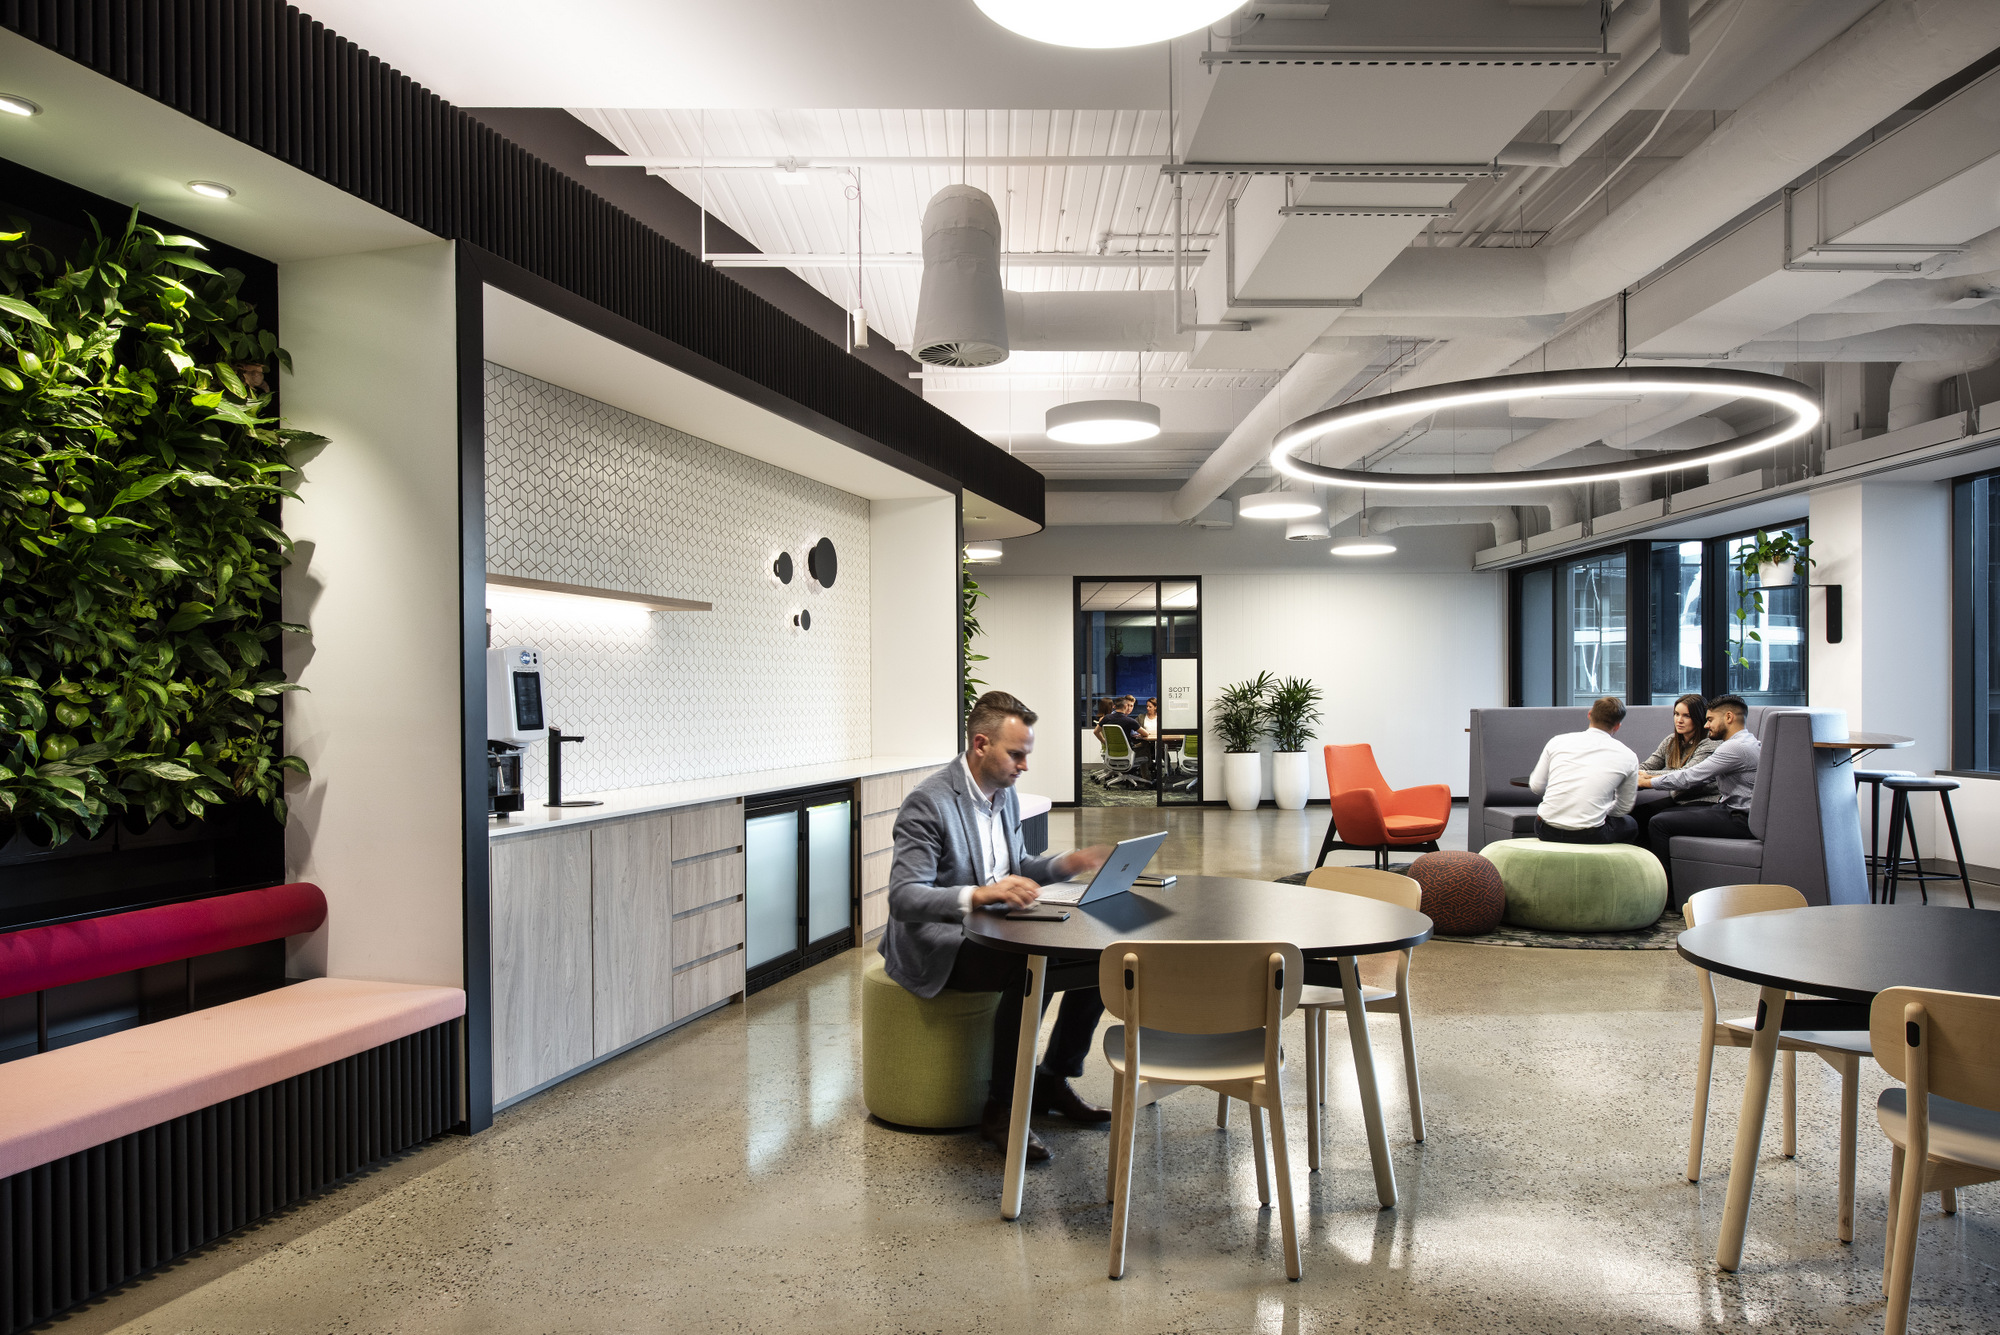 Microsoft(マイクロソフト)のオフィス - メルボルン, オーストラリアのカフェスペース